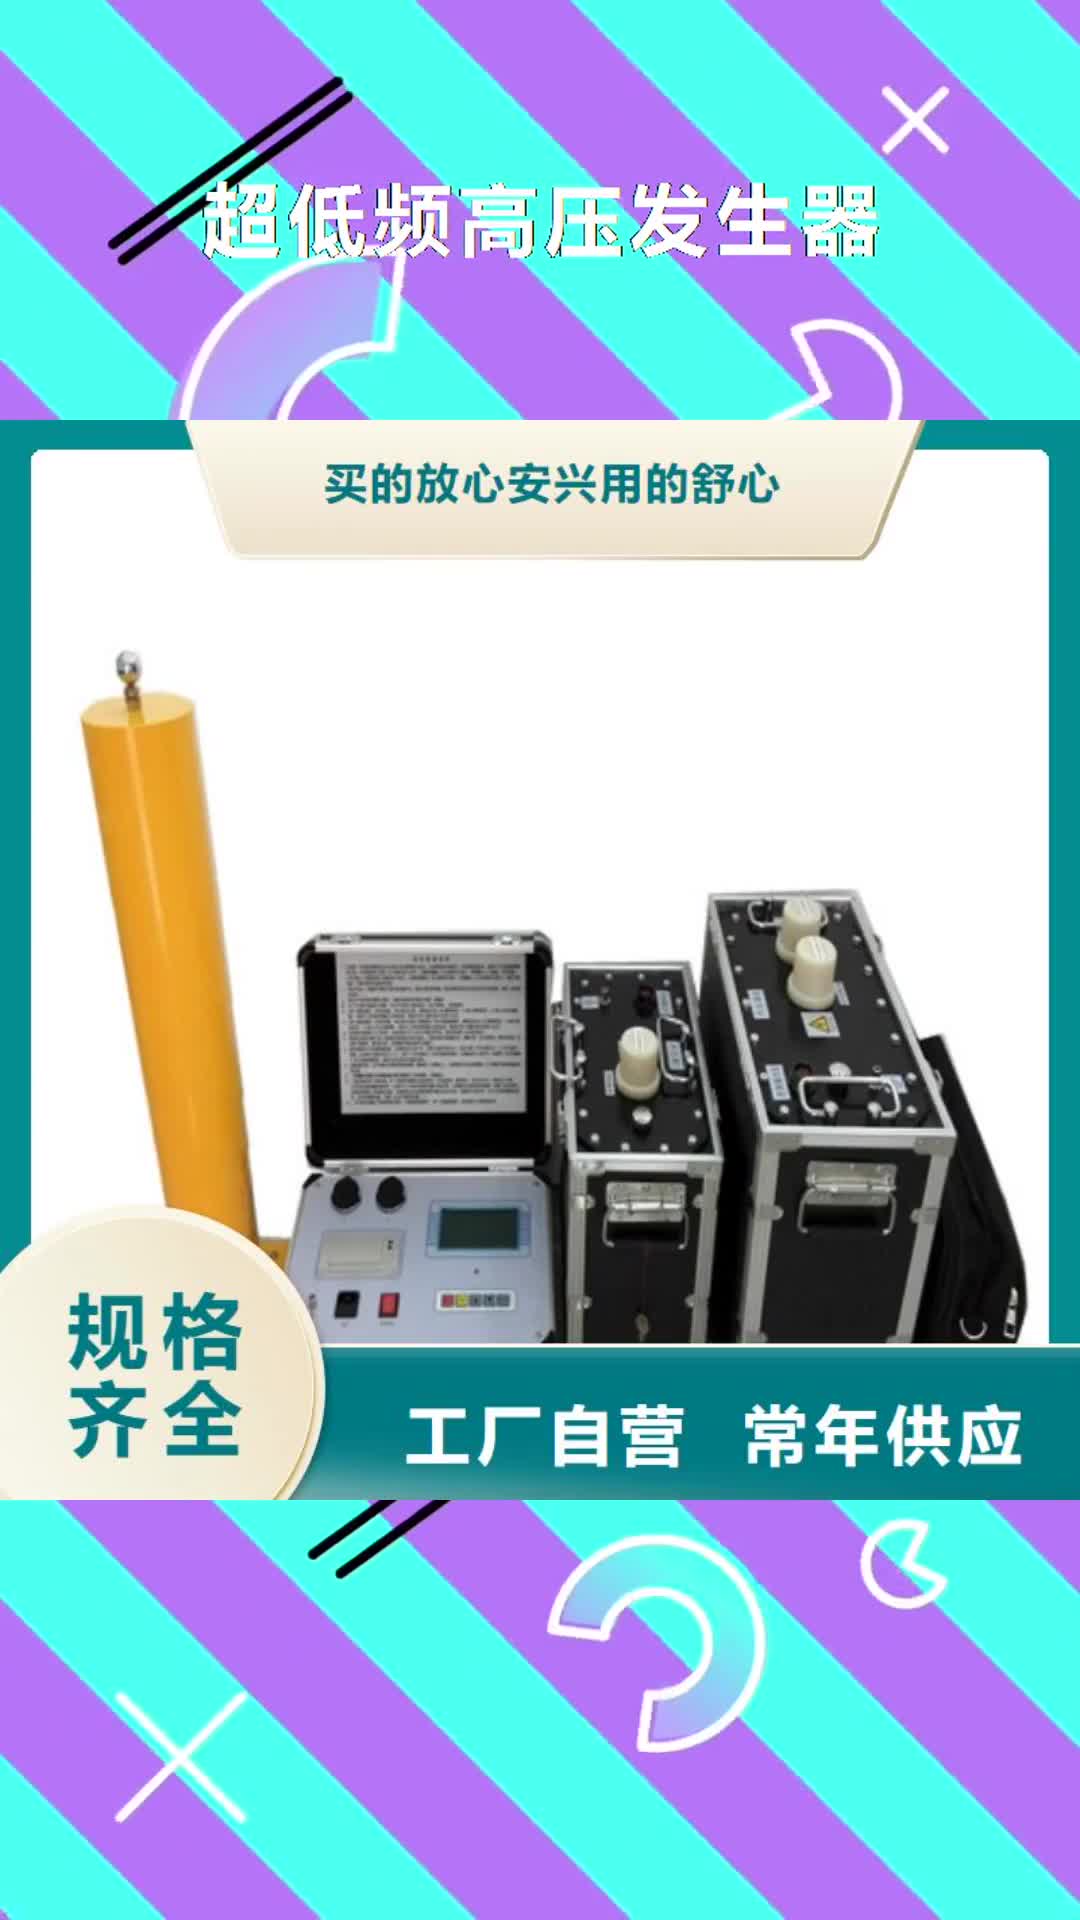 台湾【超低频高压发生器】,配电终端检测装置用心服务